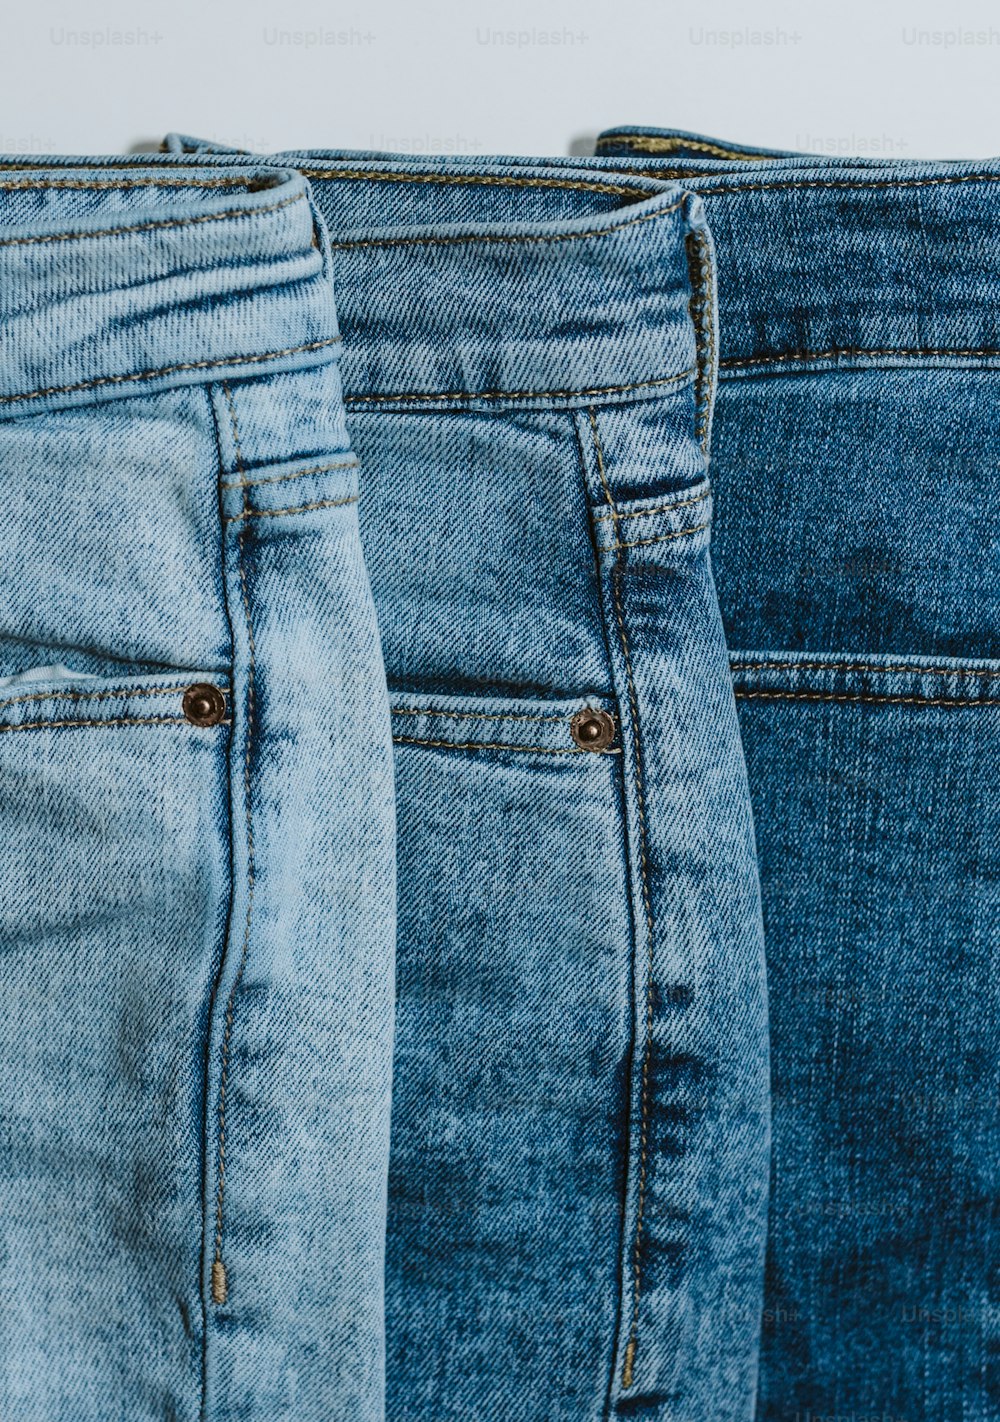 Drei Paar Jeans reihen sich in einer Reihe an